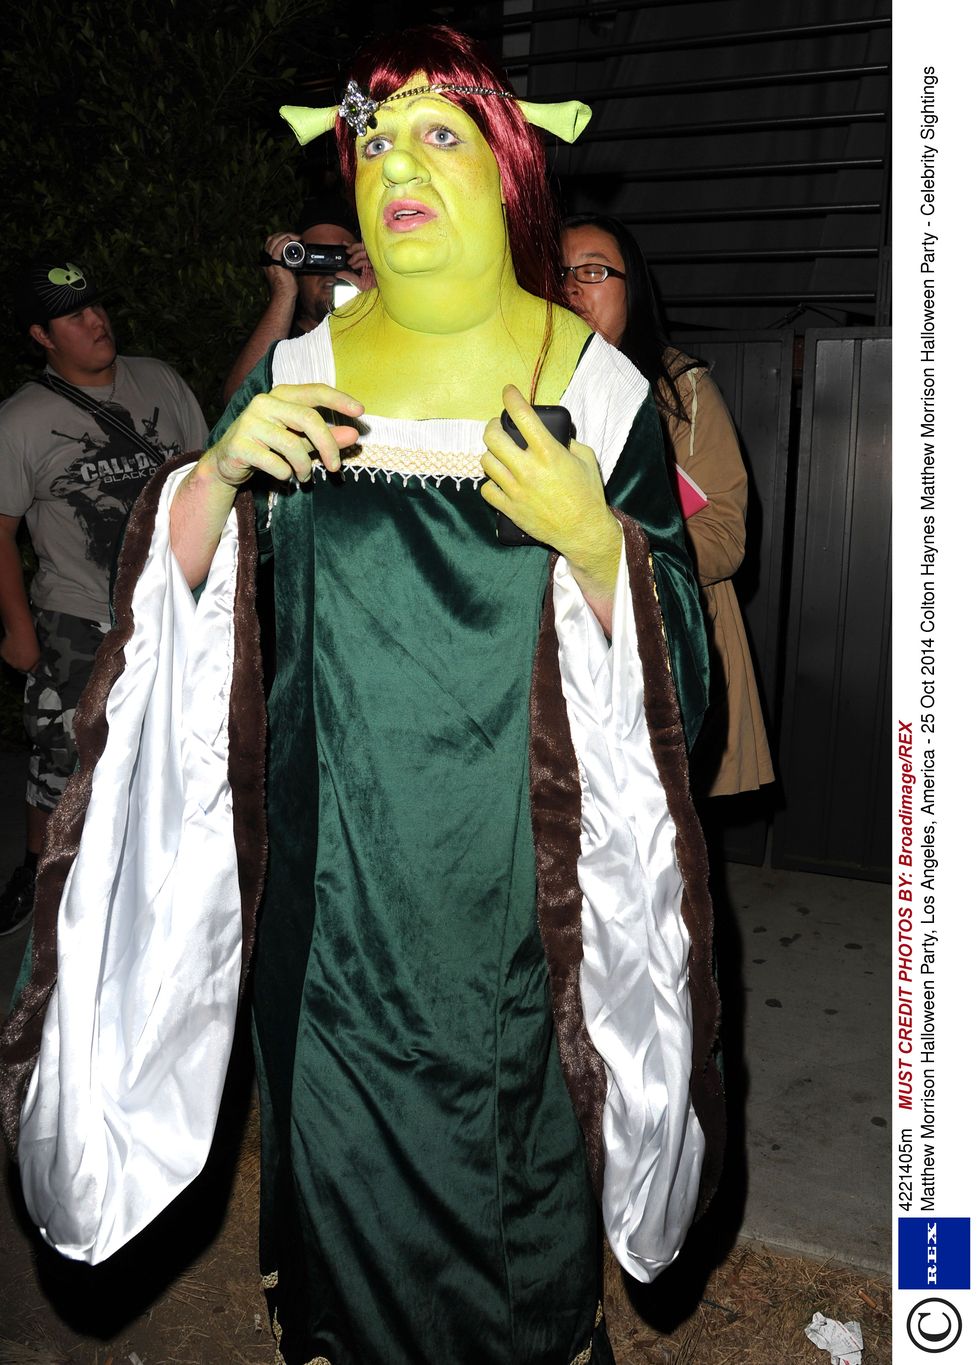 Dress Like Shrek Costume Guide, Diy Shrek Hallowen Costum Guide